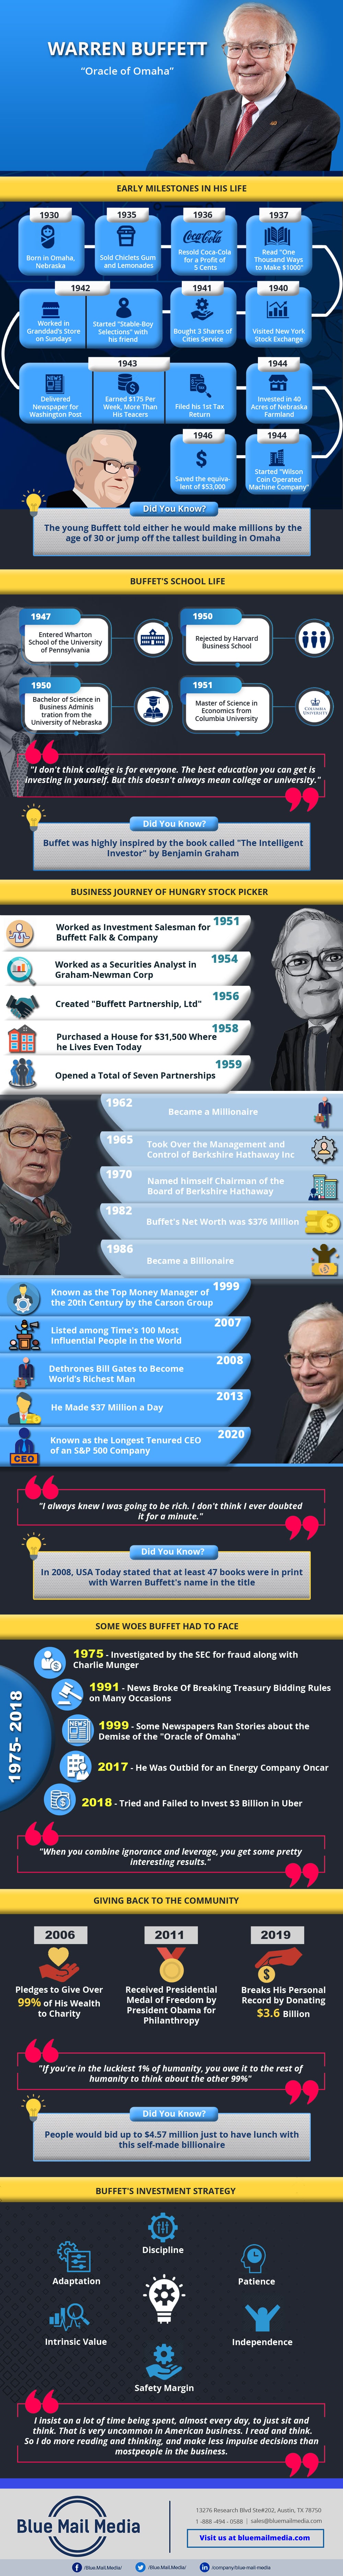 Success Story of Warren Buffett